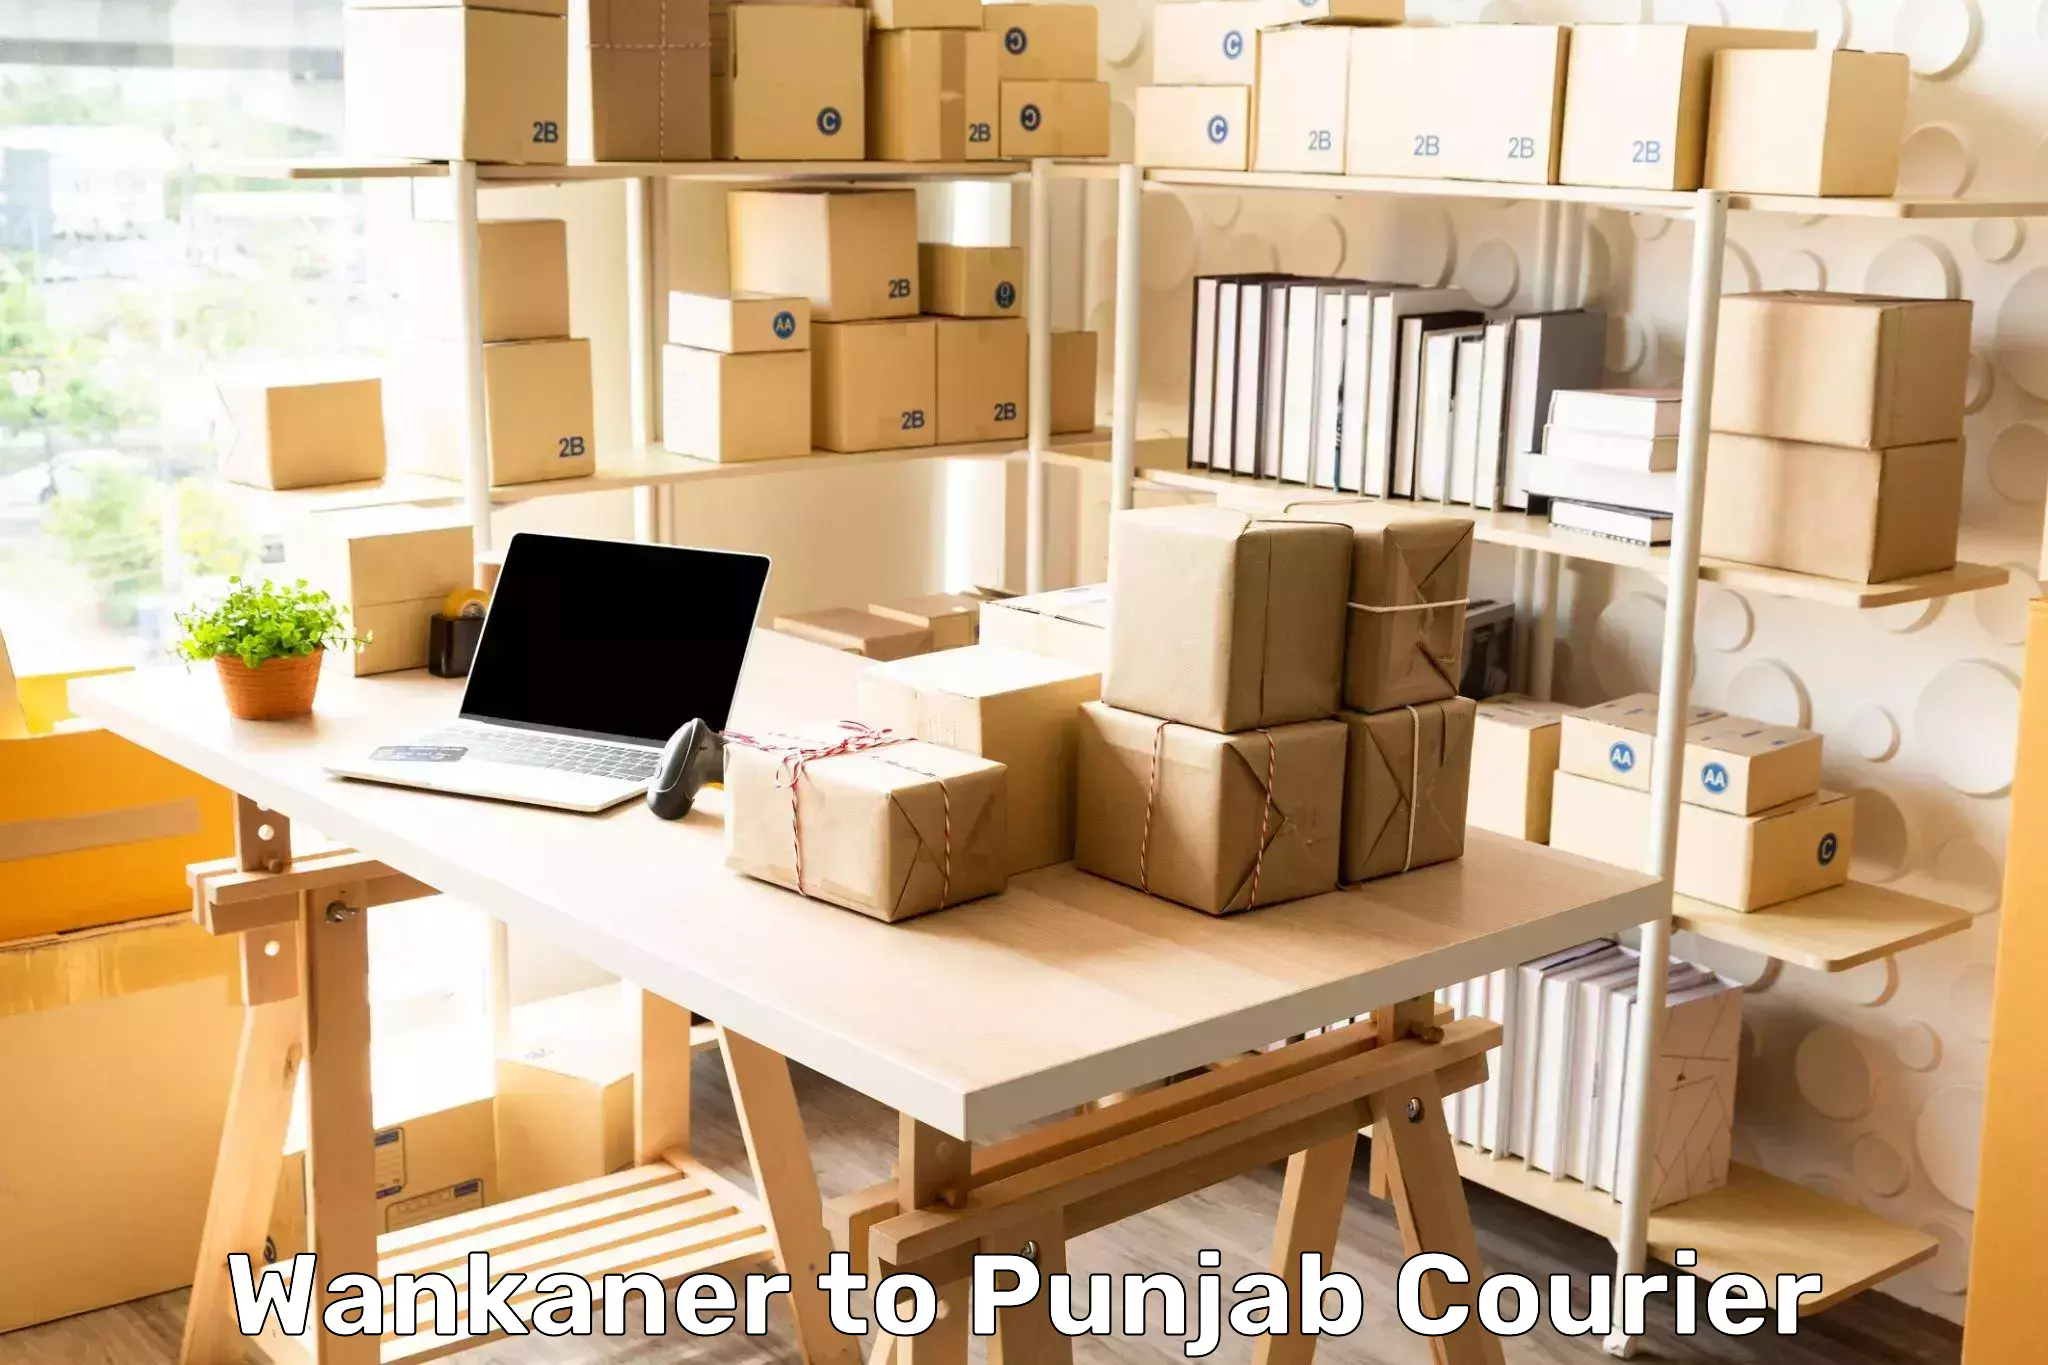 Return courier service Wankaner to Punjab